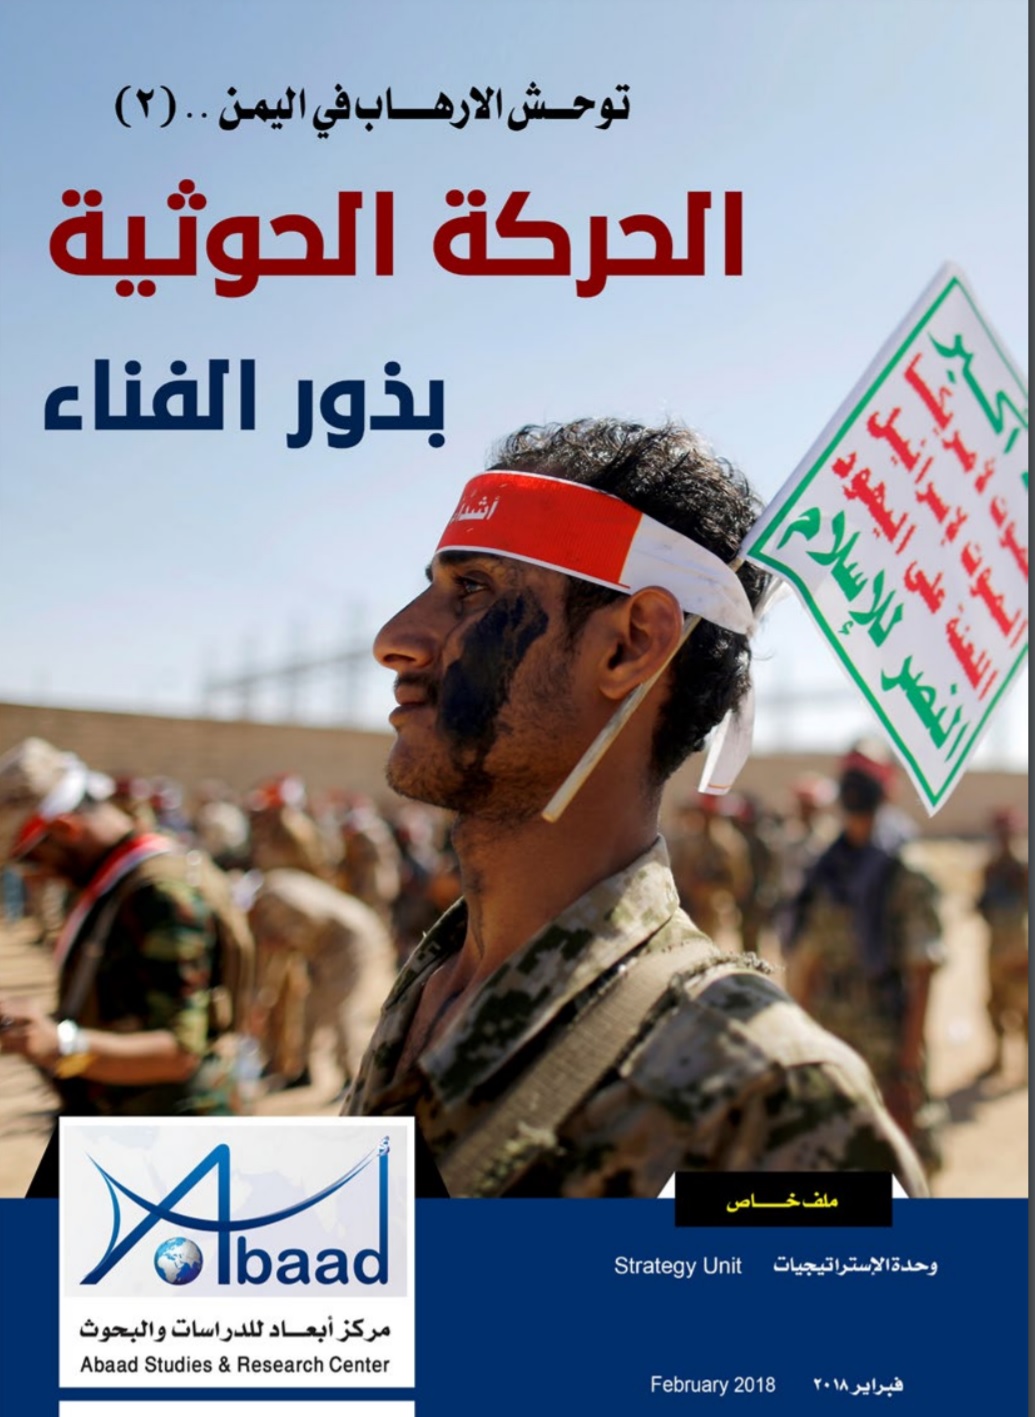  توحش الإرهاب في اليمن.. الحركة الحوثية – بذور الفناء(2)